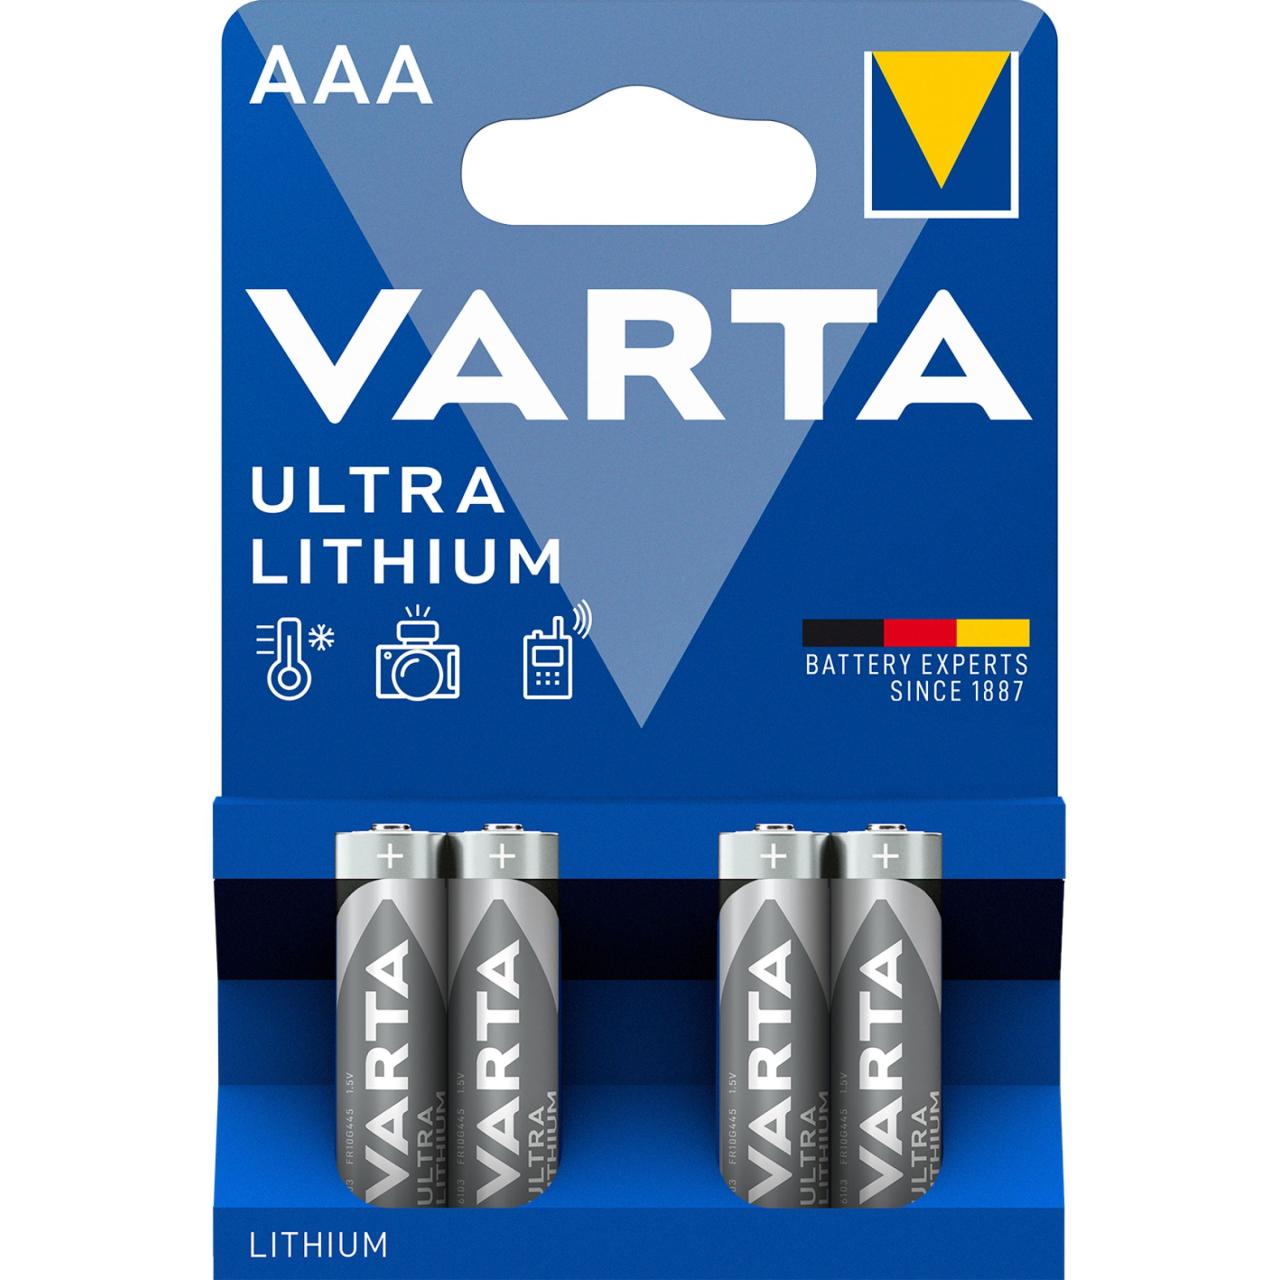 Varta Ultra Lithium AAA 4 st förpackning